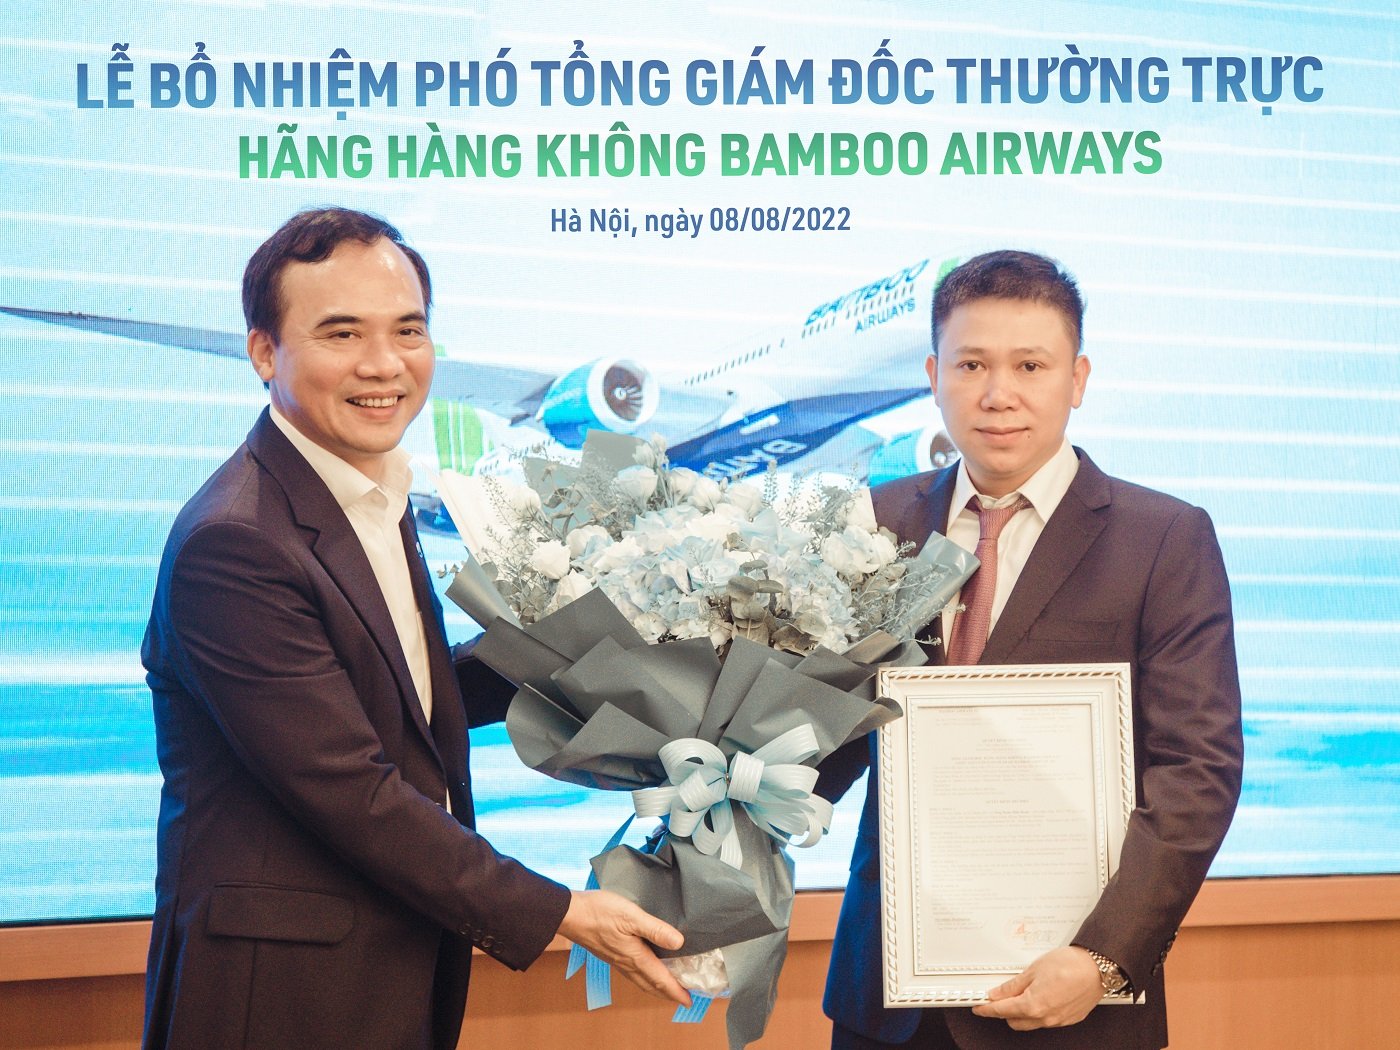 Ông Doãn Hữu Đoàn nắm giữ vị trí Phó Tổng Giám đốc Thường trực Hãng hàng không Bamboo Airways kể từ ngày 6/8/2022